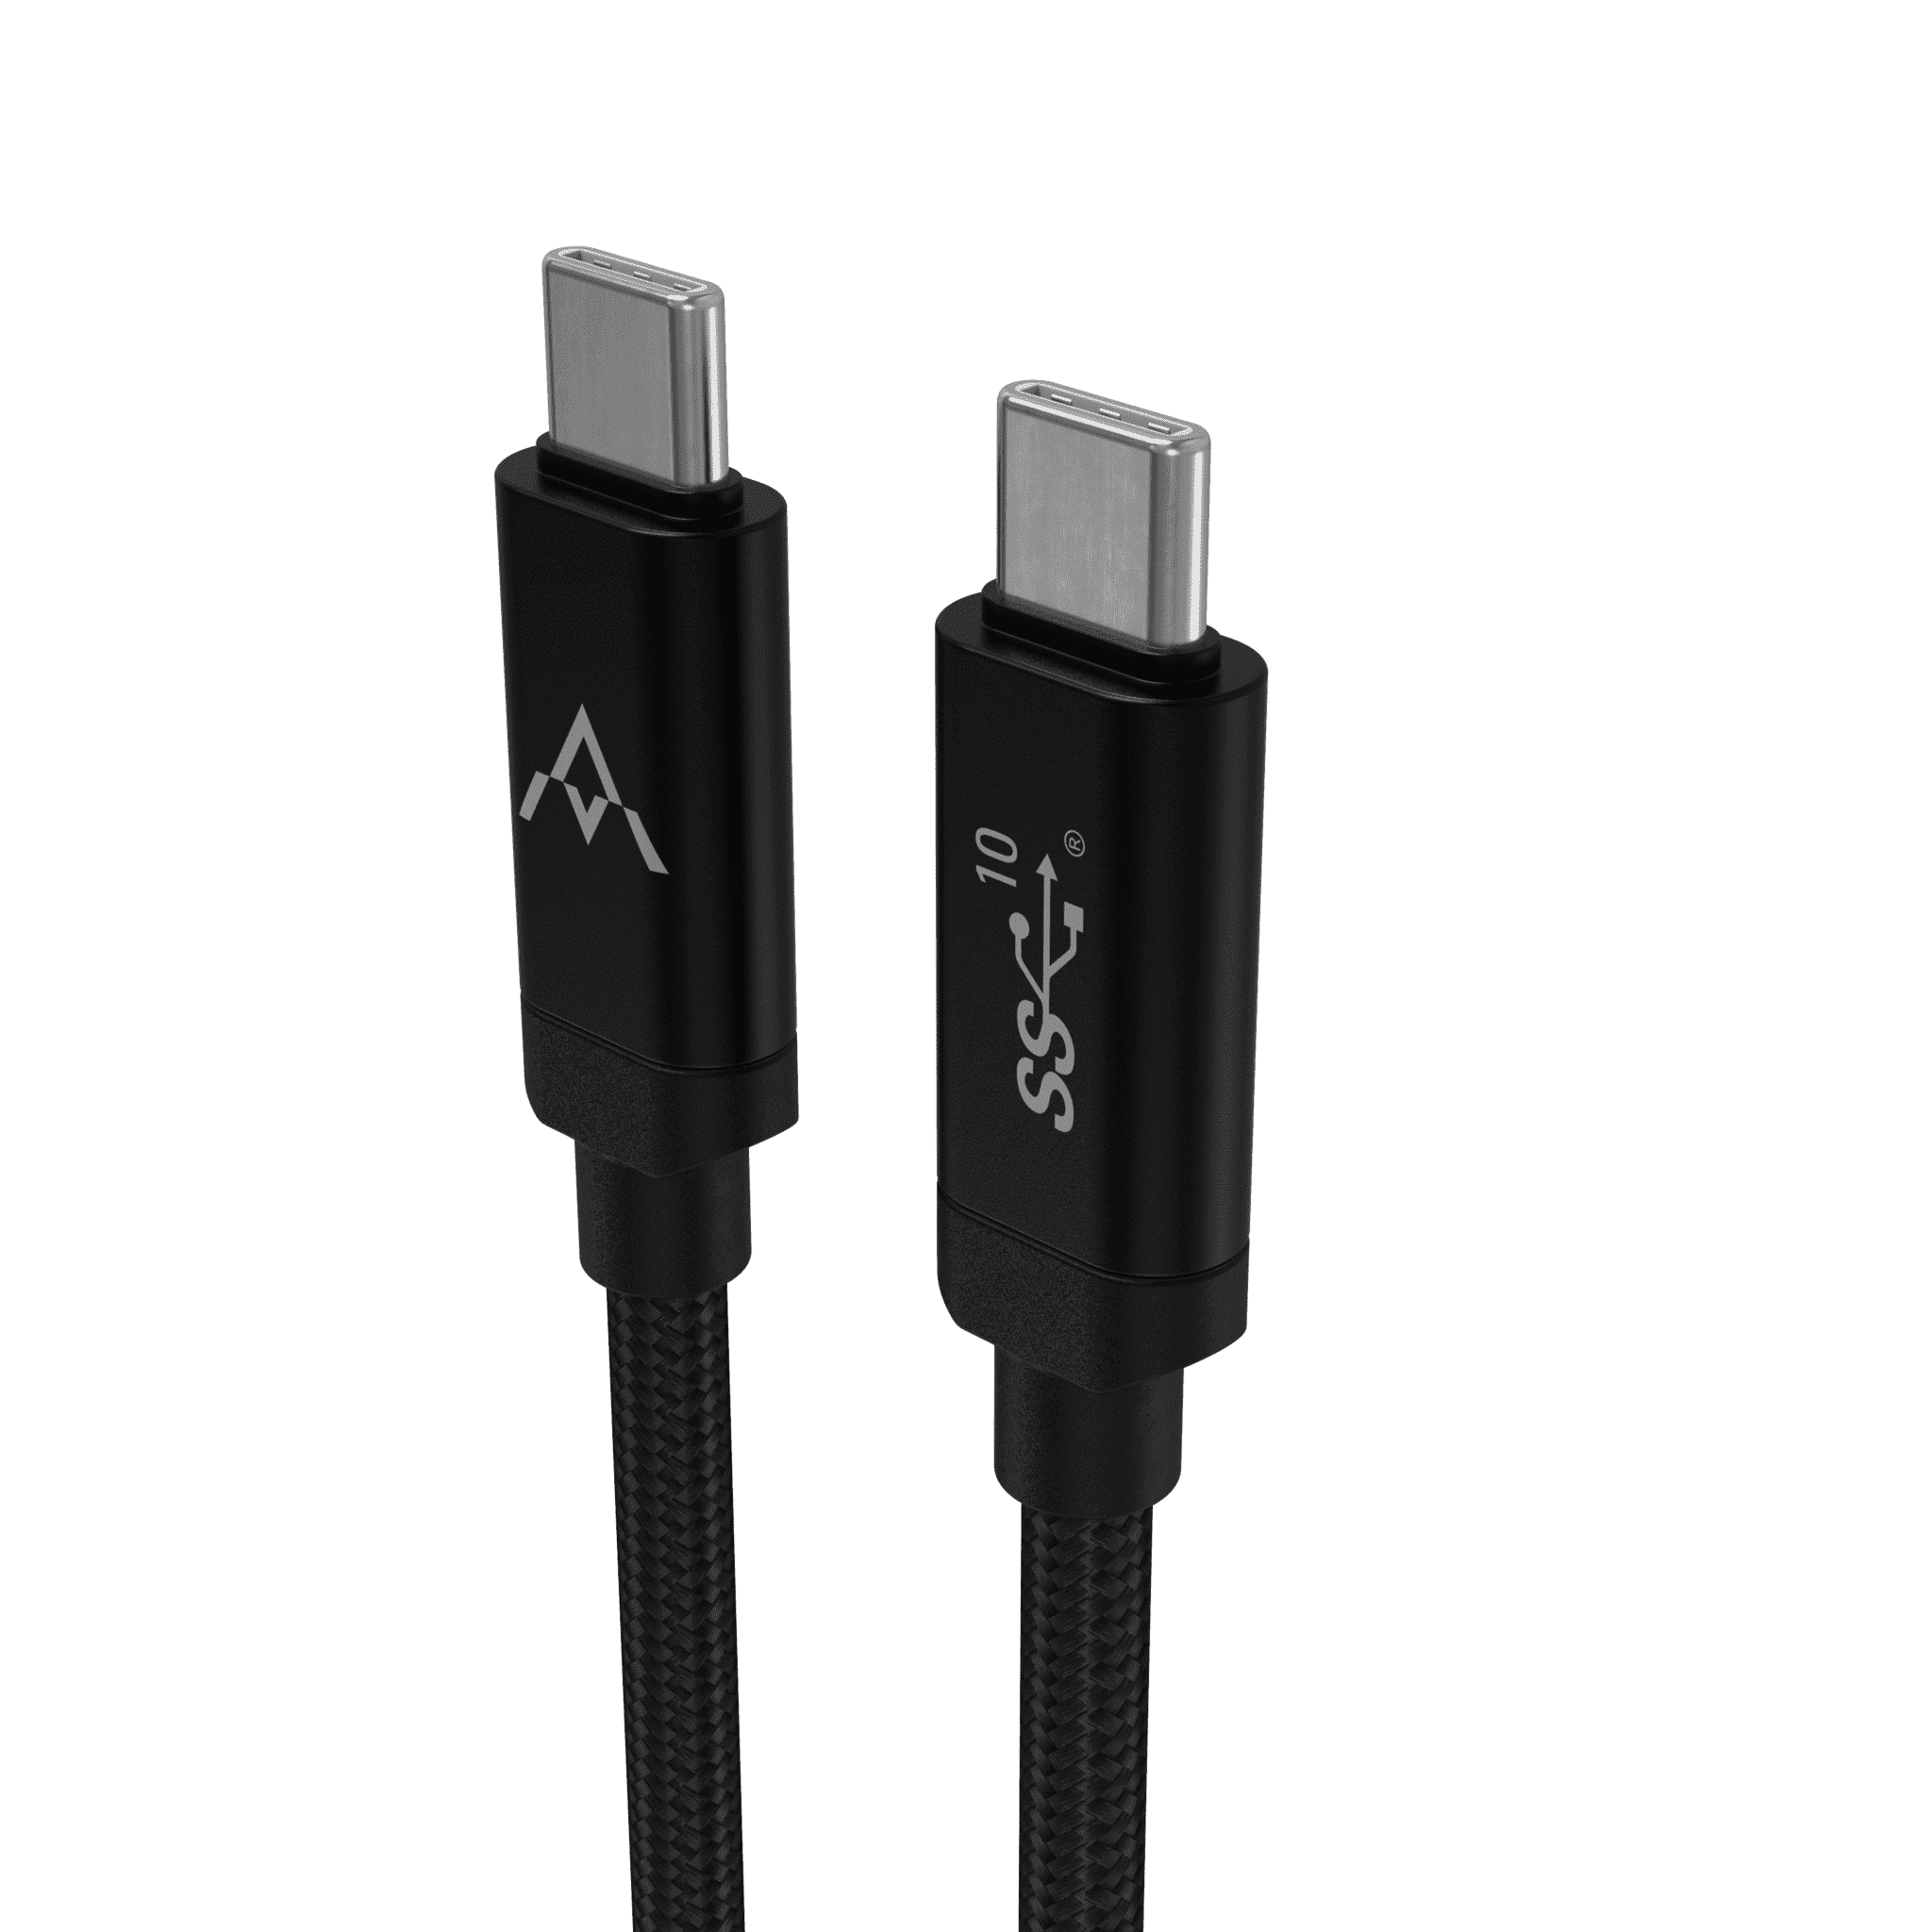 Imagem de PNG de cabo USB Type-C